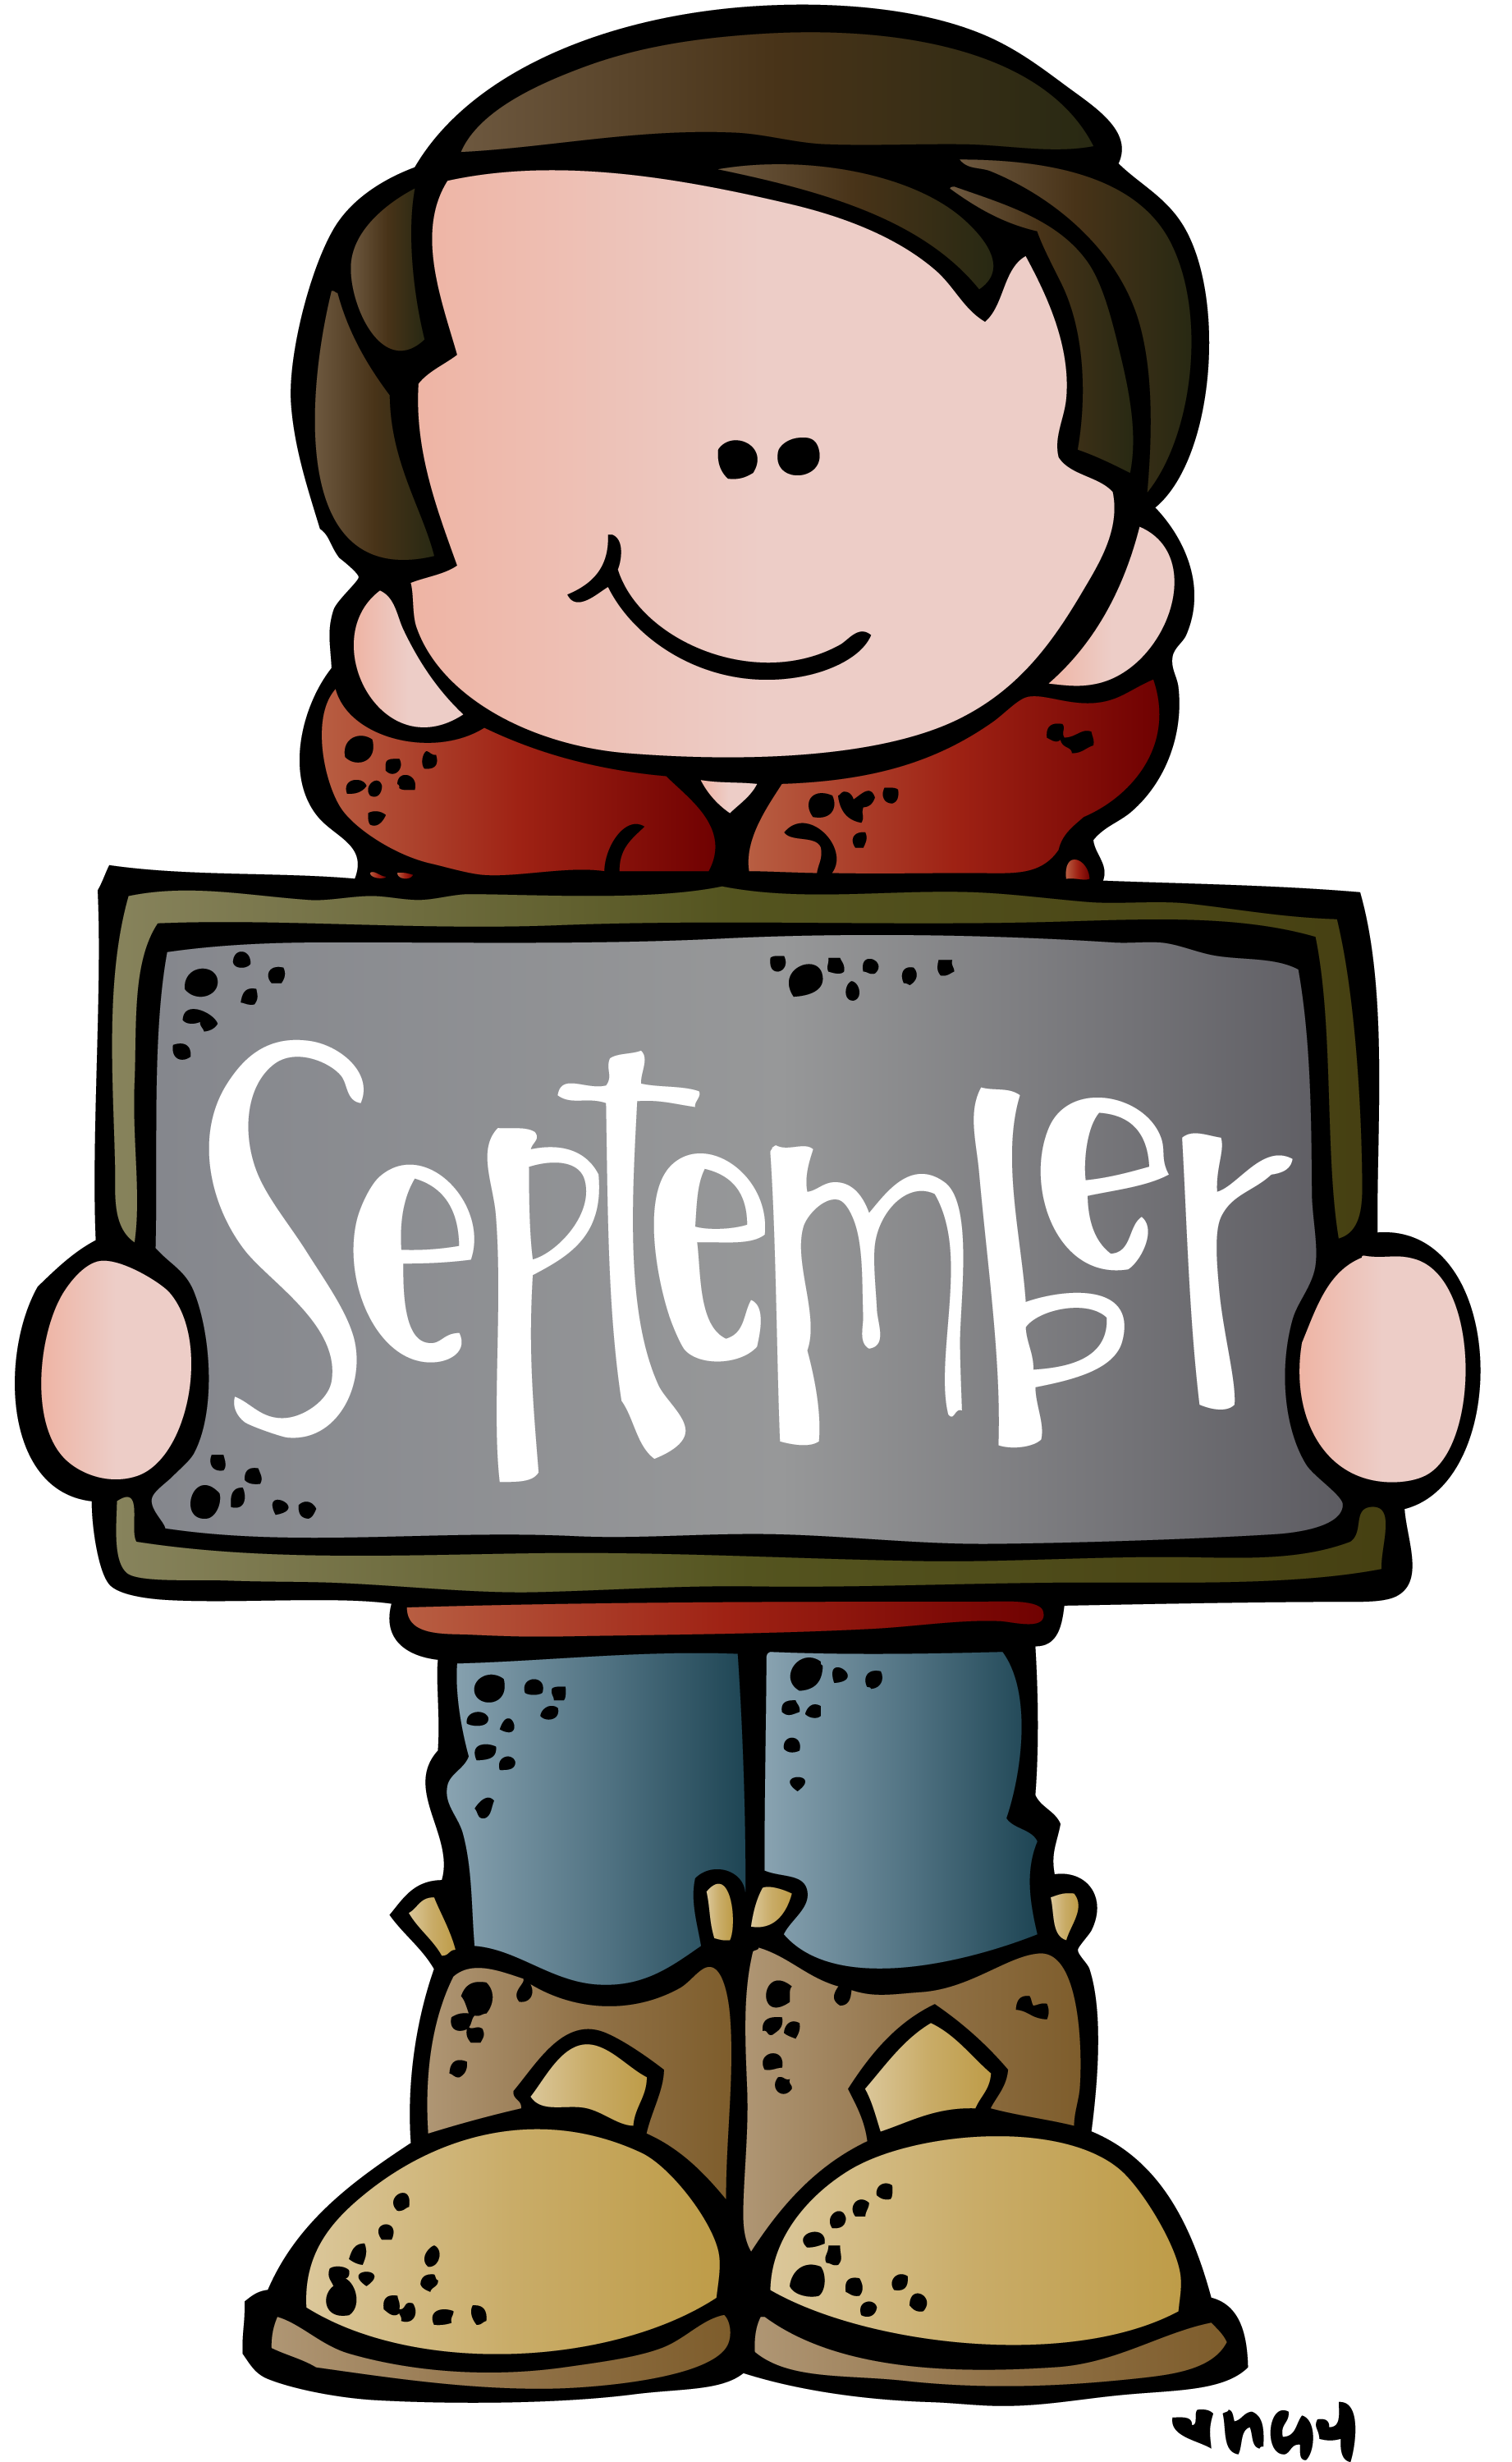 September calendar clipart.